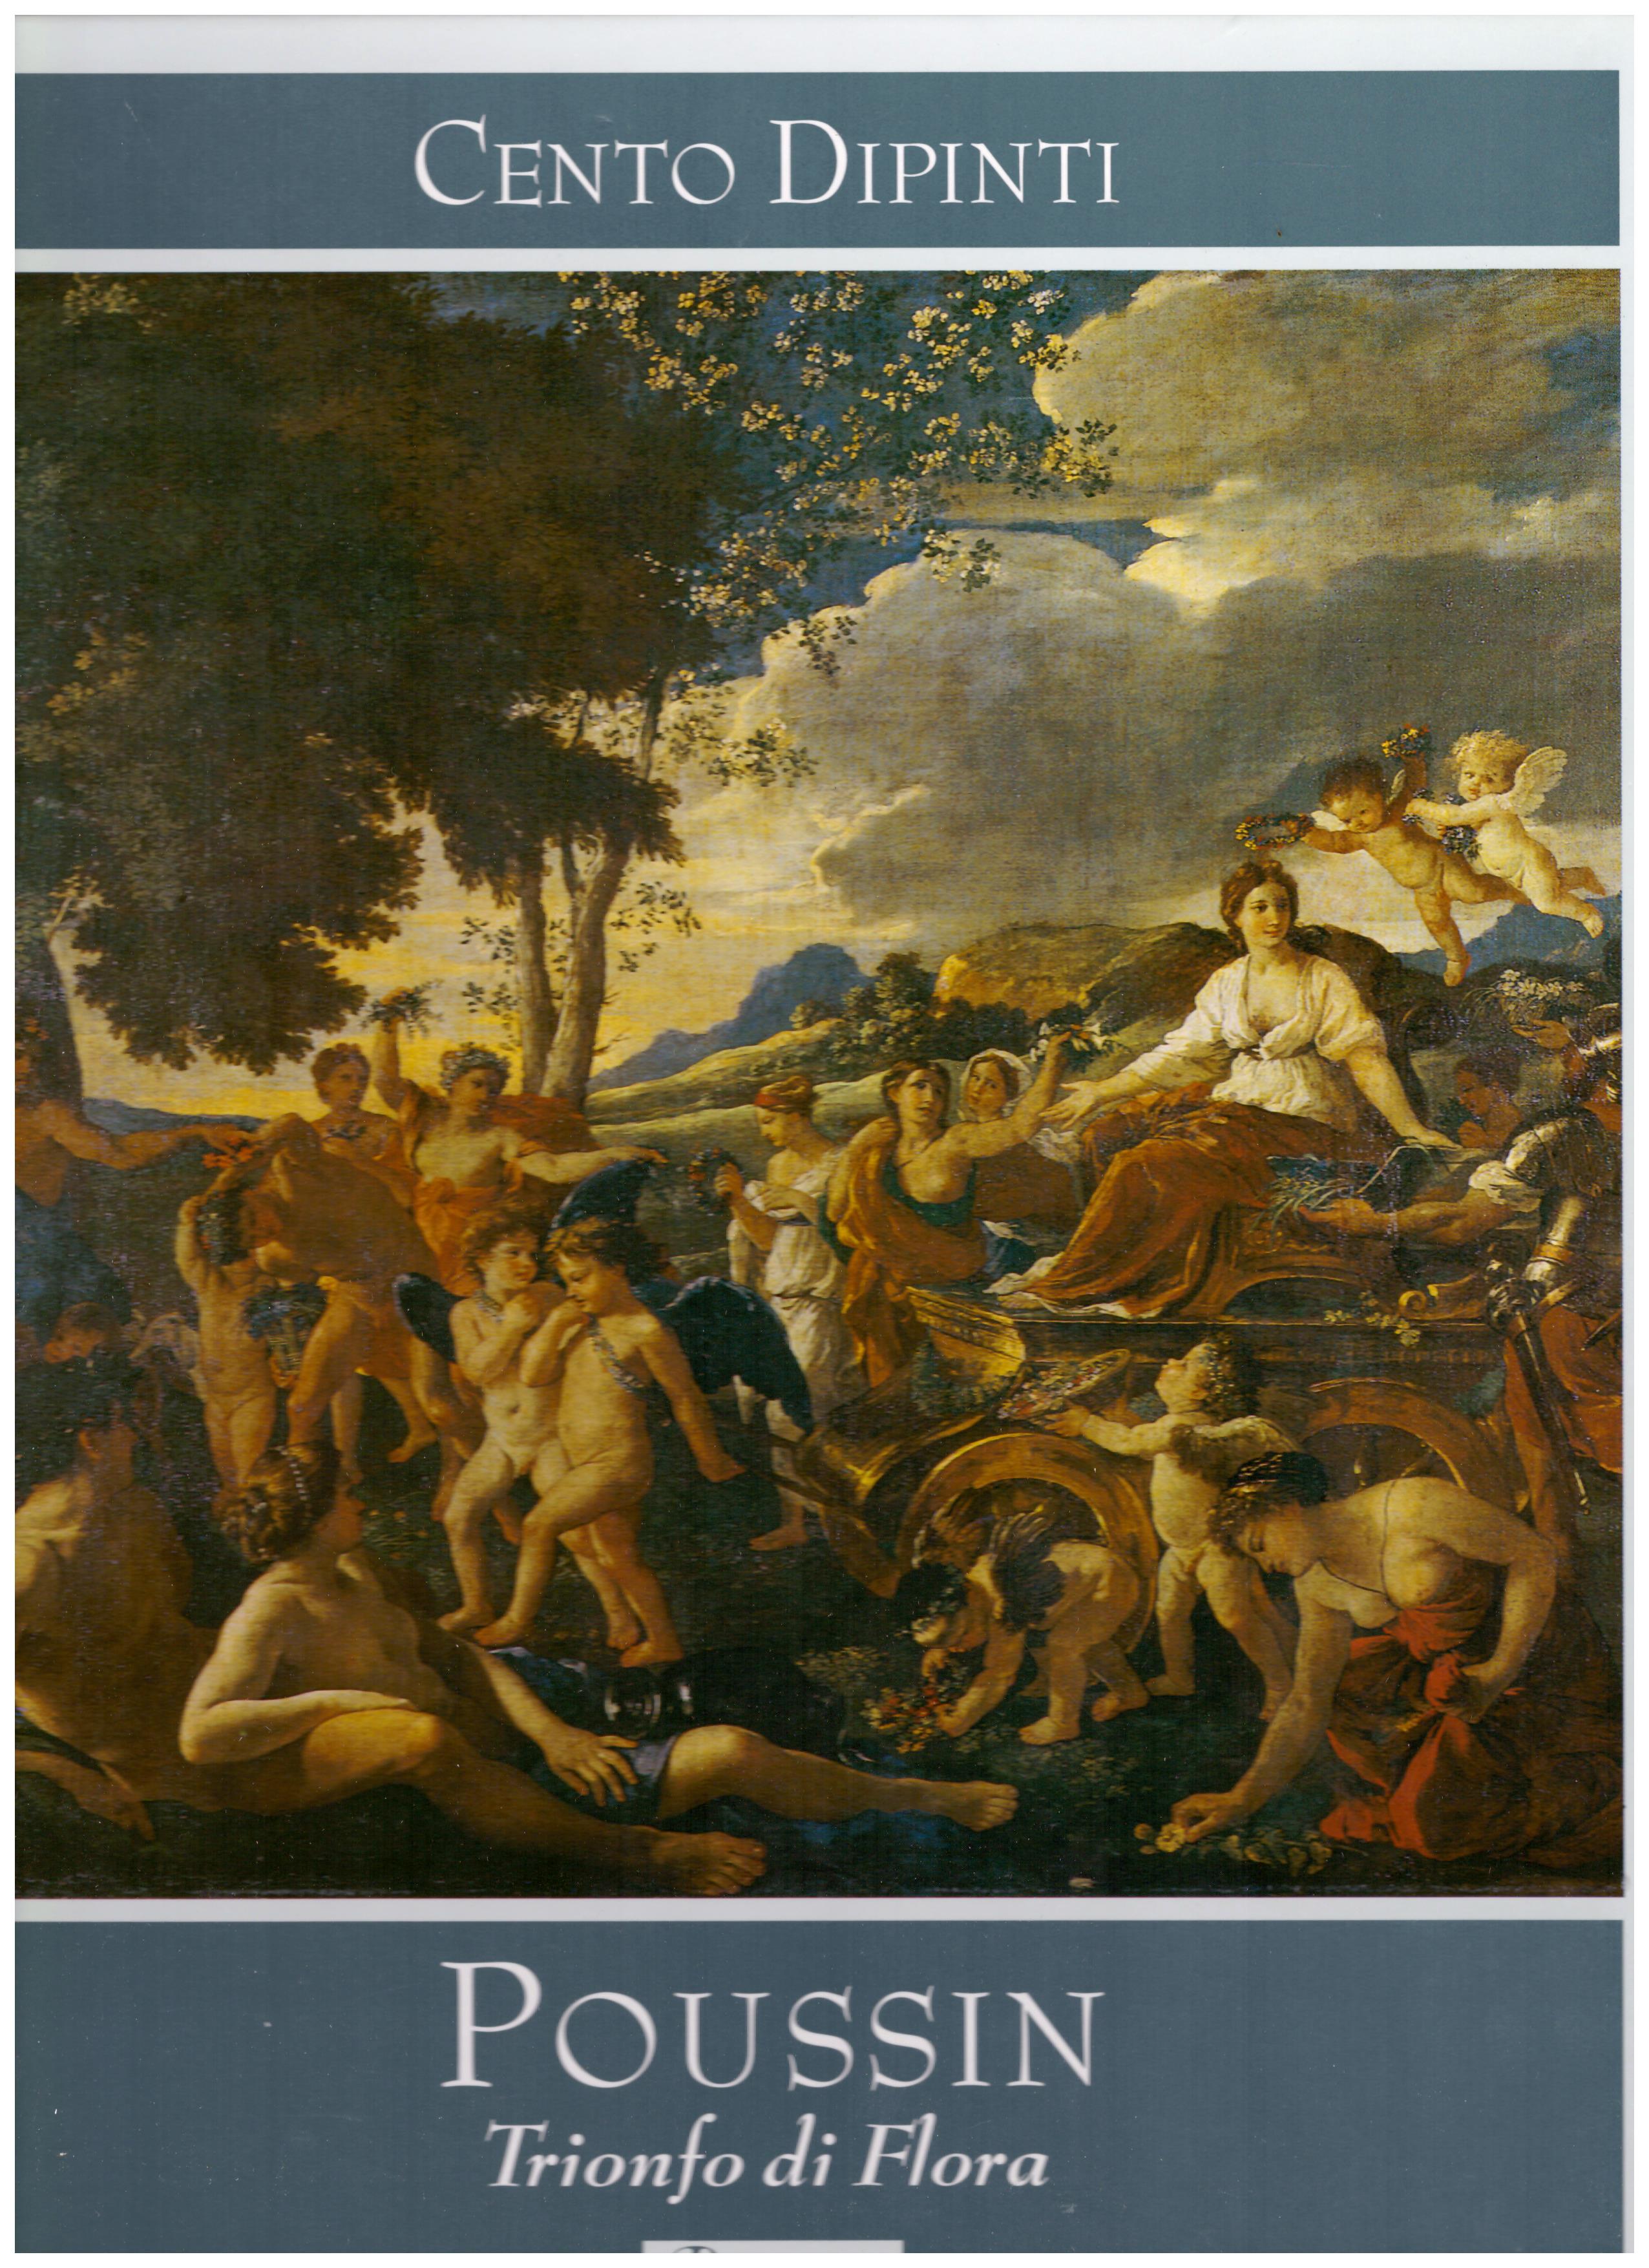 Titolo: Cento Dipinti, Poussin, Trionfo di Flora  Autore : AA.VV.  Editore: Rizzoli